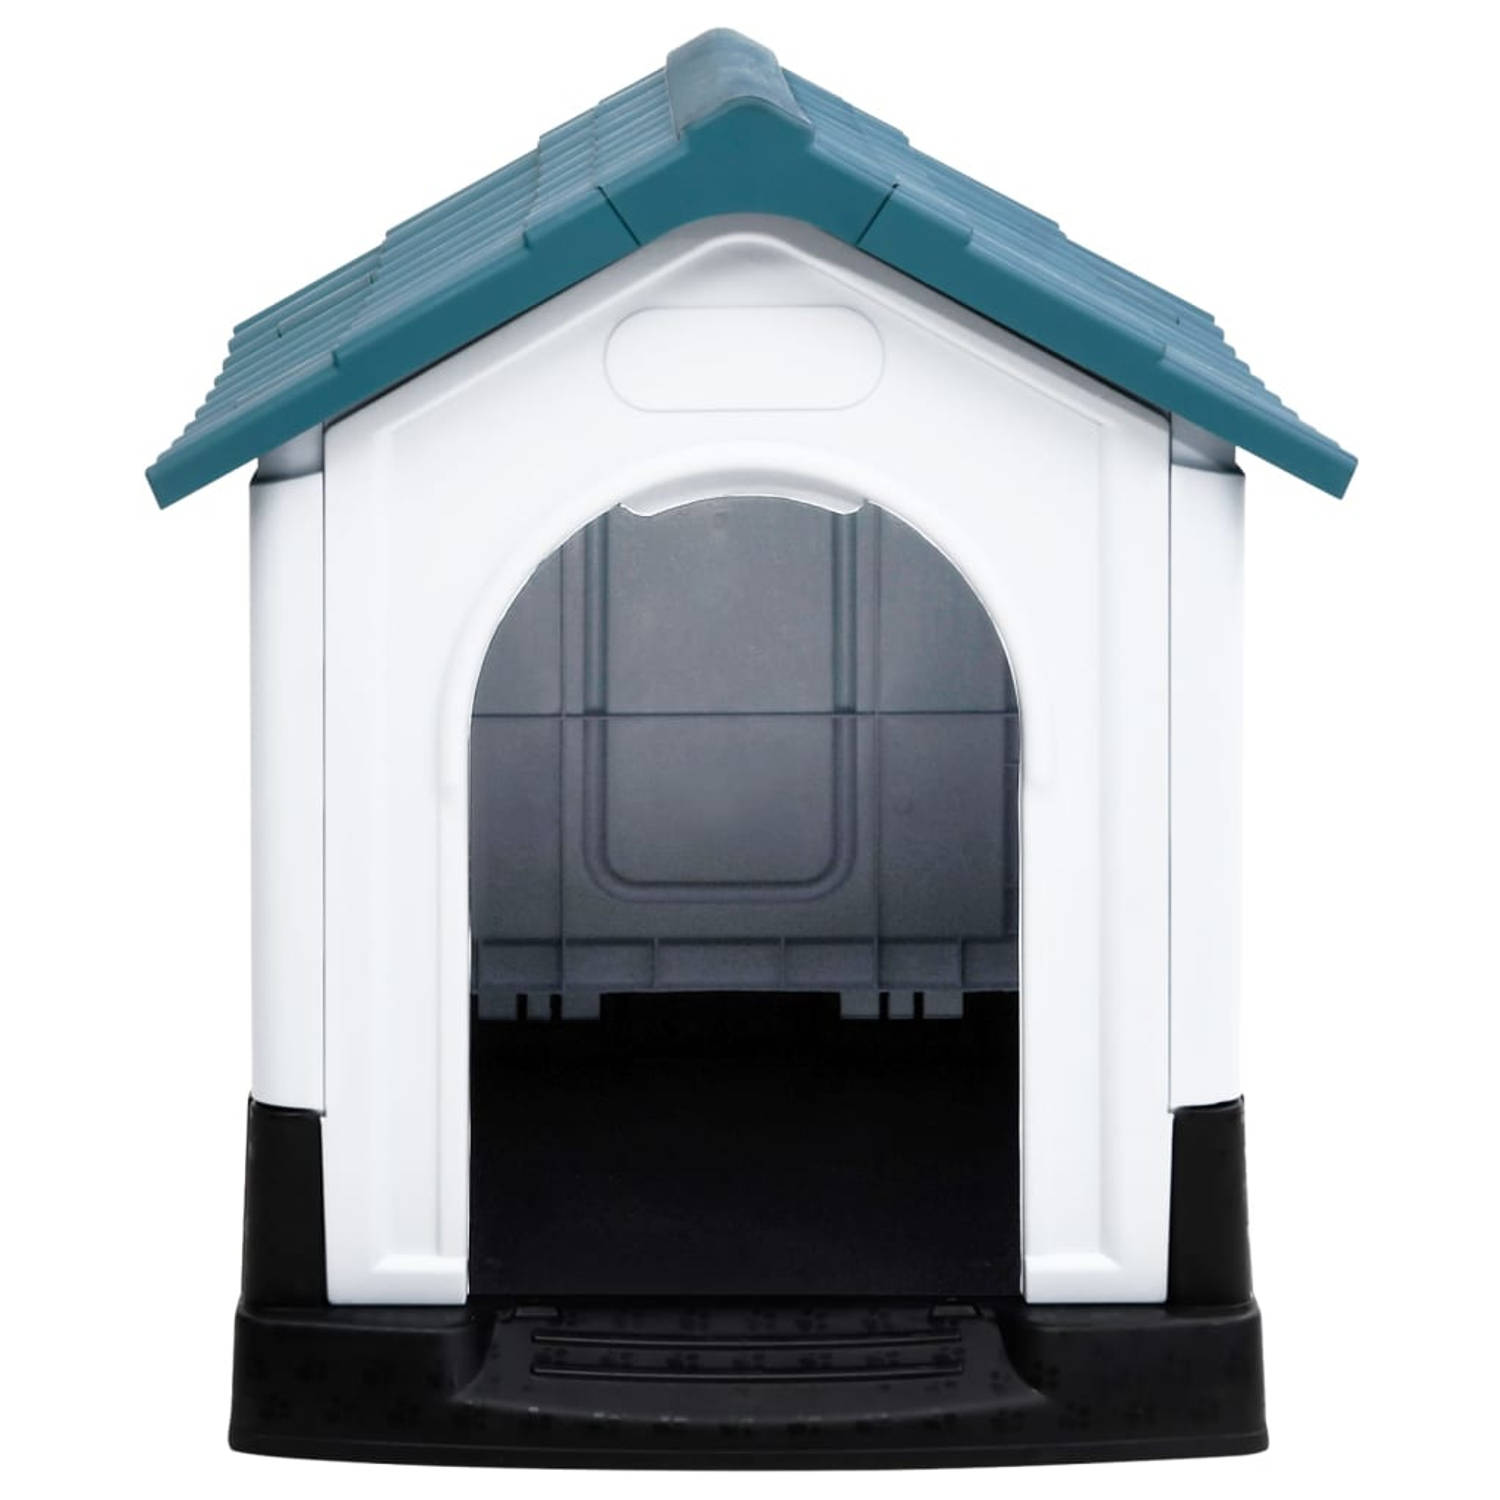 The Living Store Hondenhok - Duurzaam PP - Goede ventilatie - Praktisch dak - Verhoogde vloer - Blauw/Wit/Zwart - 57x68x66 cm